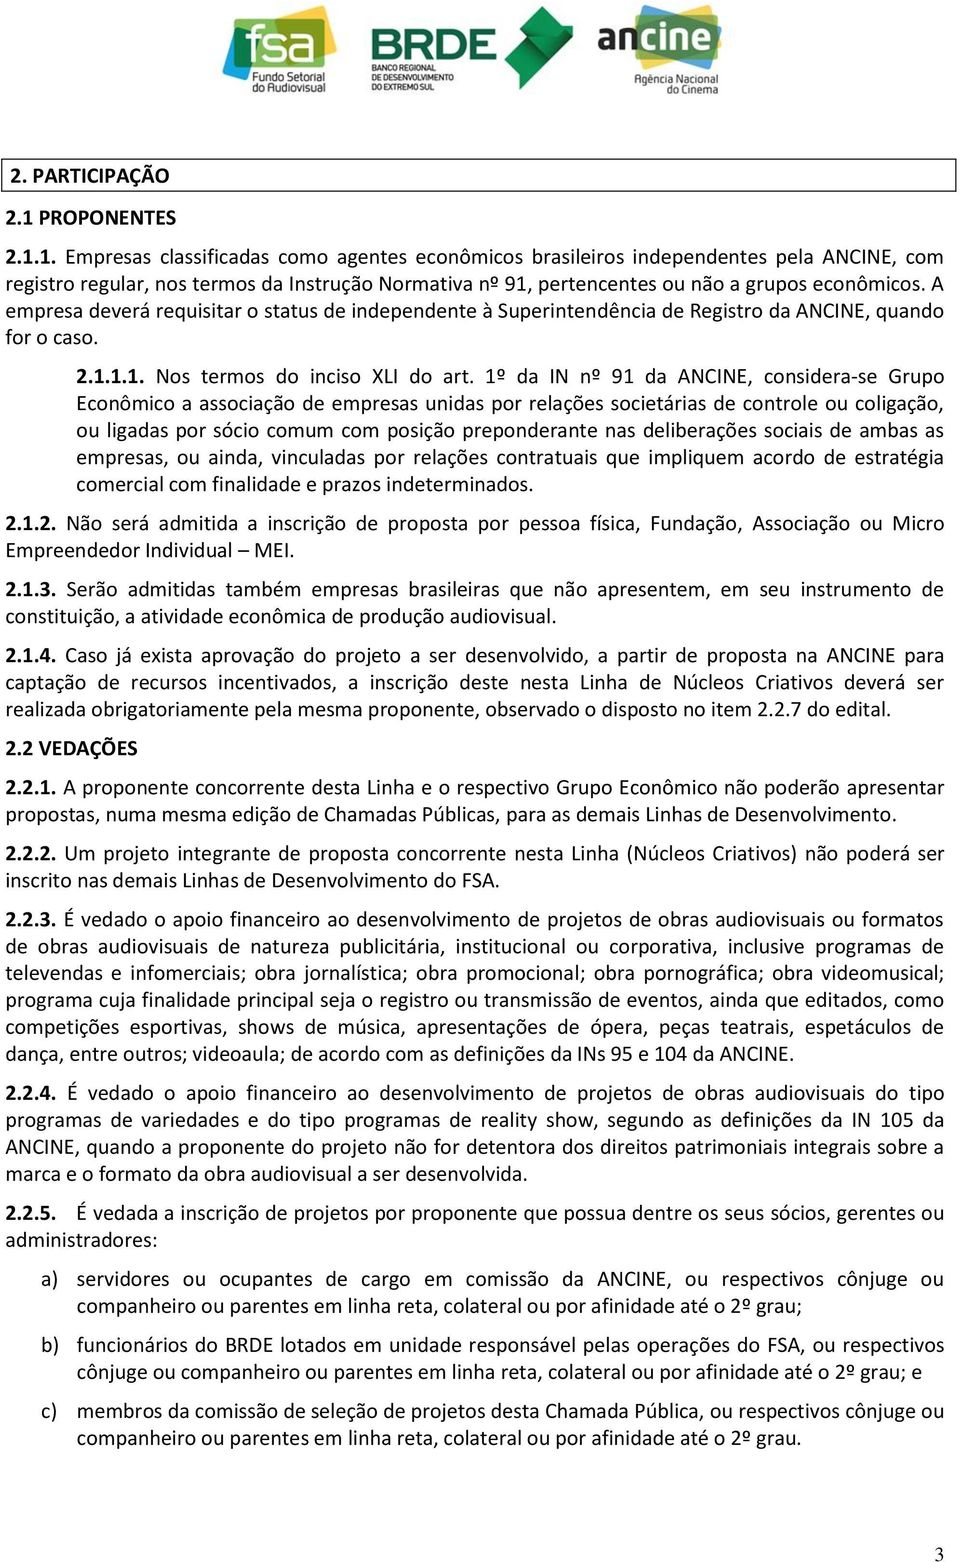 1. Empresas classificadas como agentes econômicos brasileiros independentes pela ANCINE, com registro regular, nos termos da Instrução Normativa nº 91, pertencentes ou não a grupos econômicos.